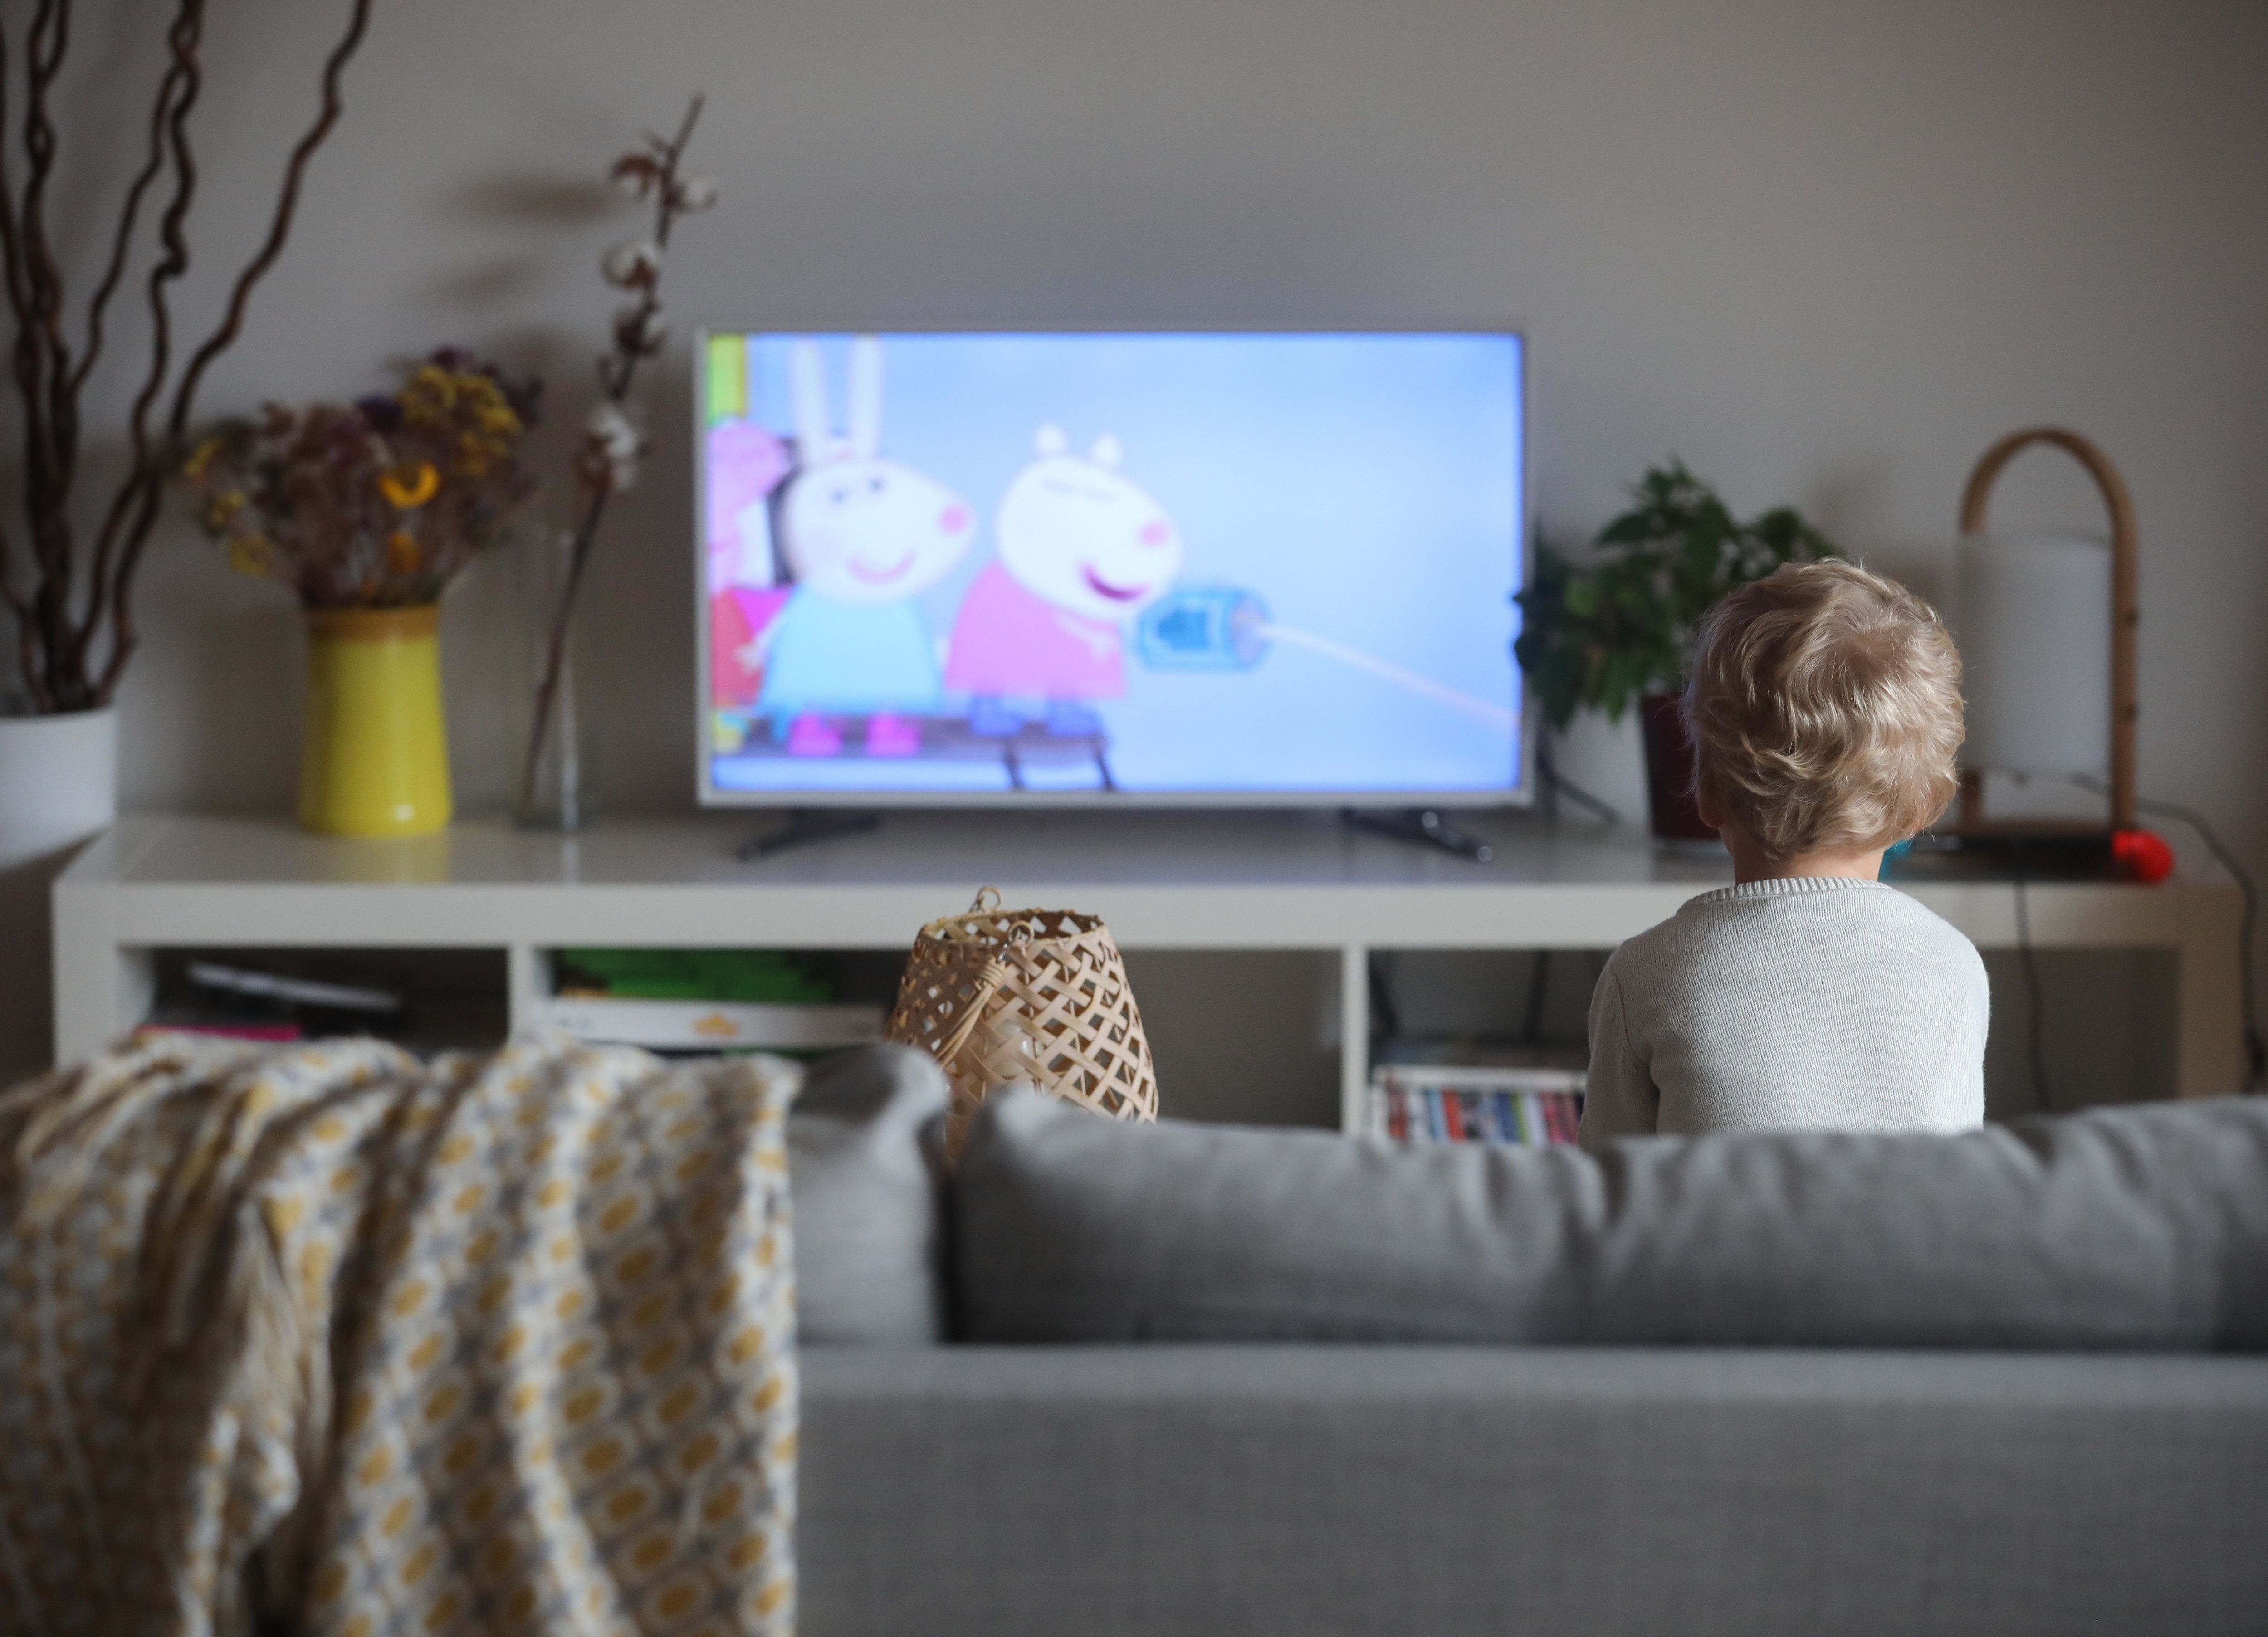 Les enfants semblent pâtir du fait de regarder fréquemment la télévision en famille pendant les repas, selon une récente étude. (Illustration) LP/Aurélie Ladet